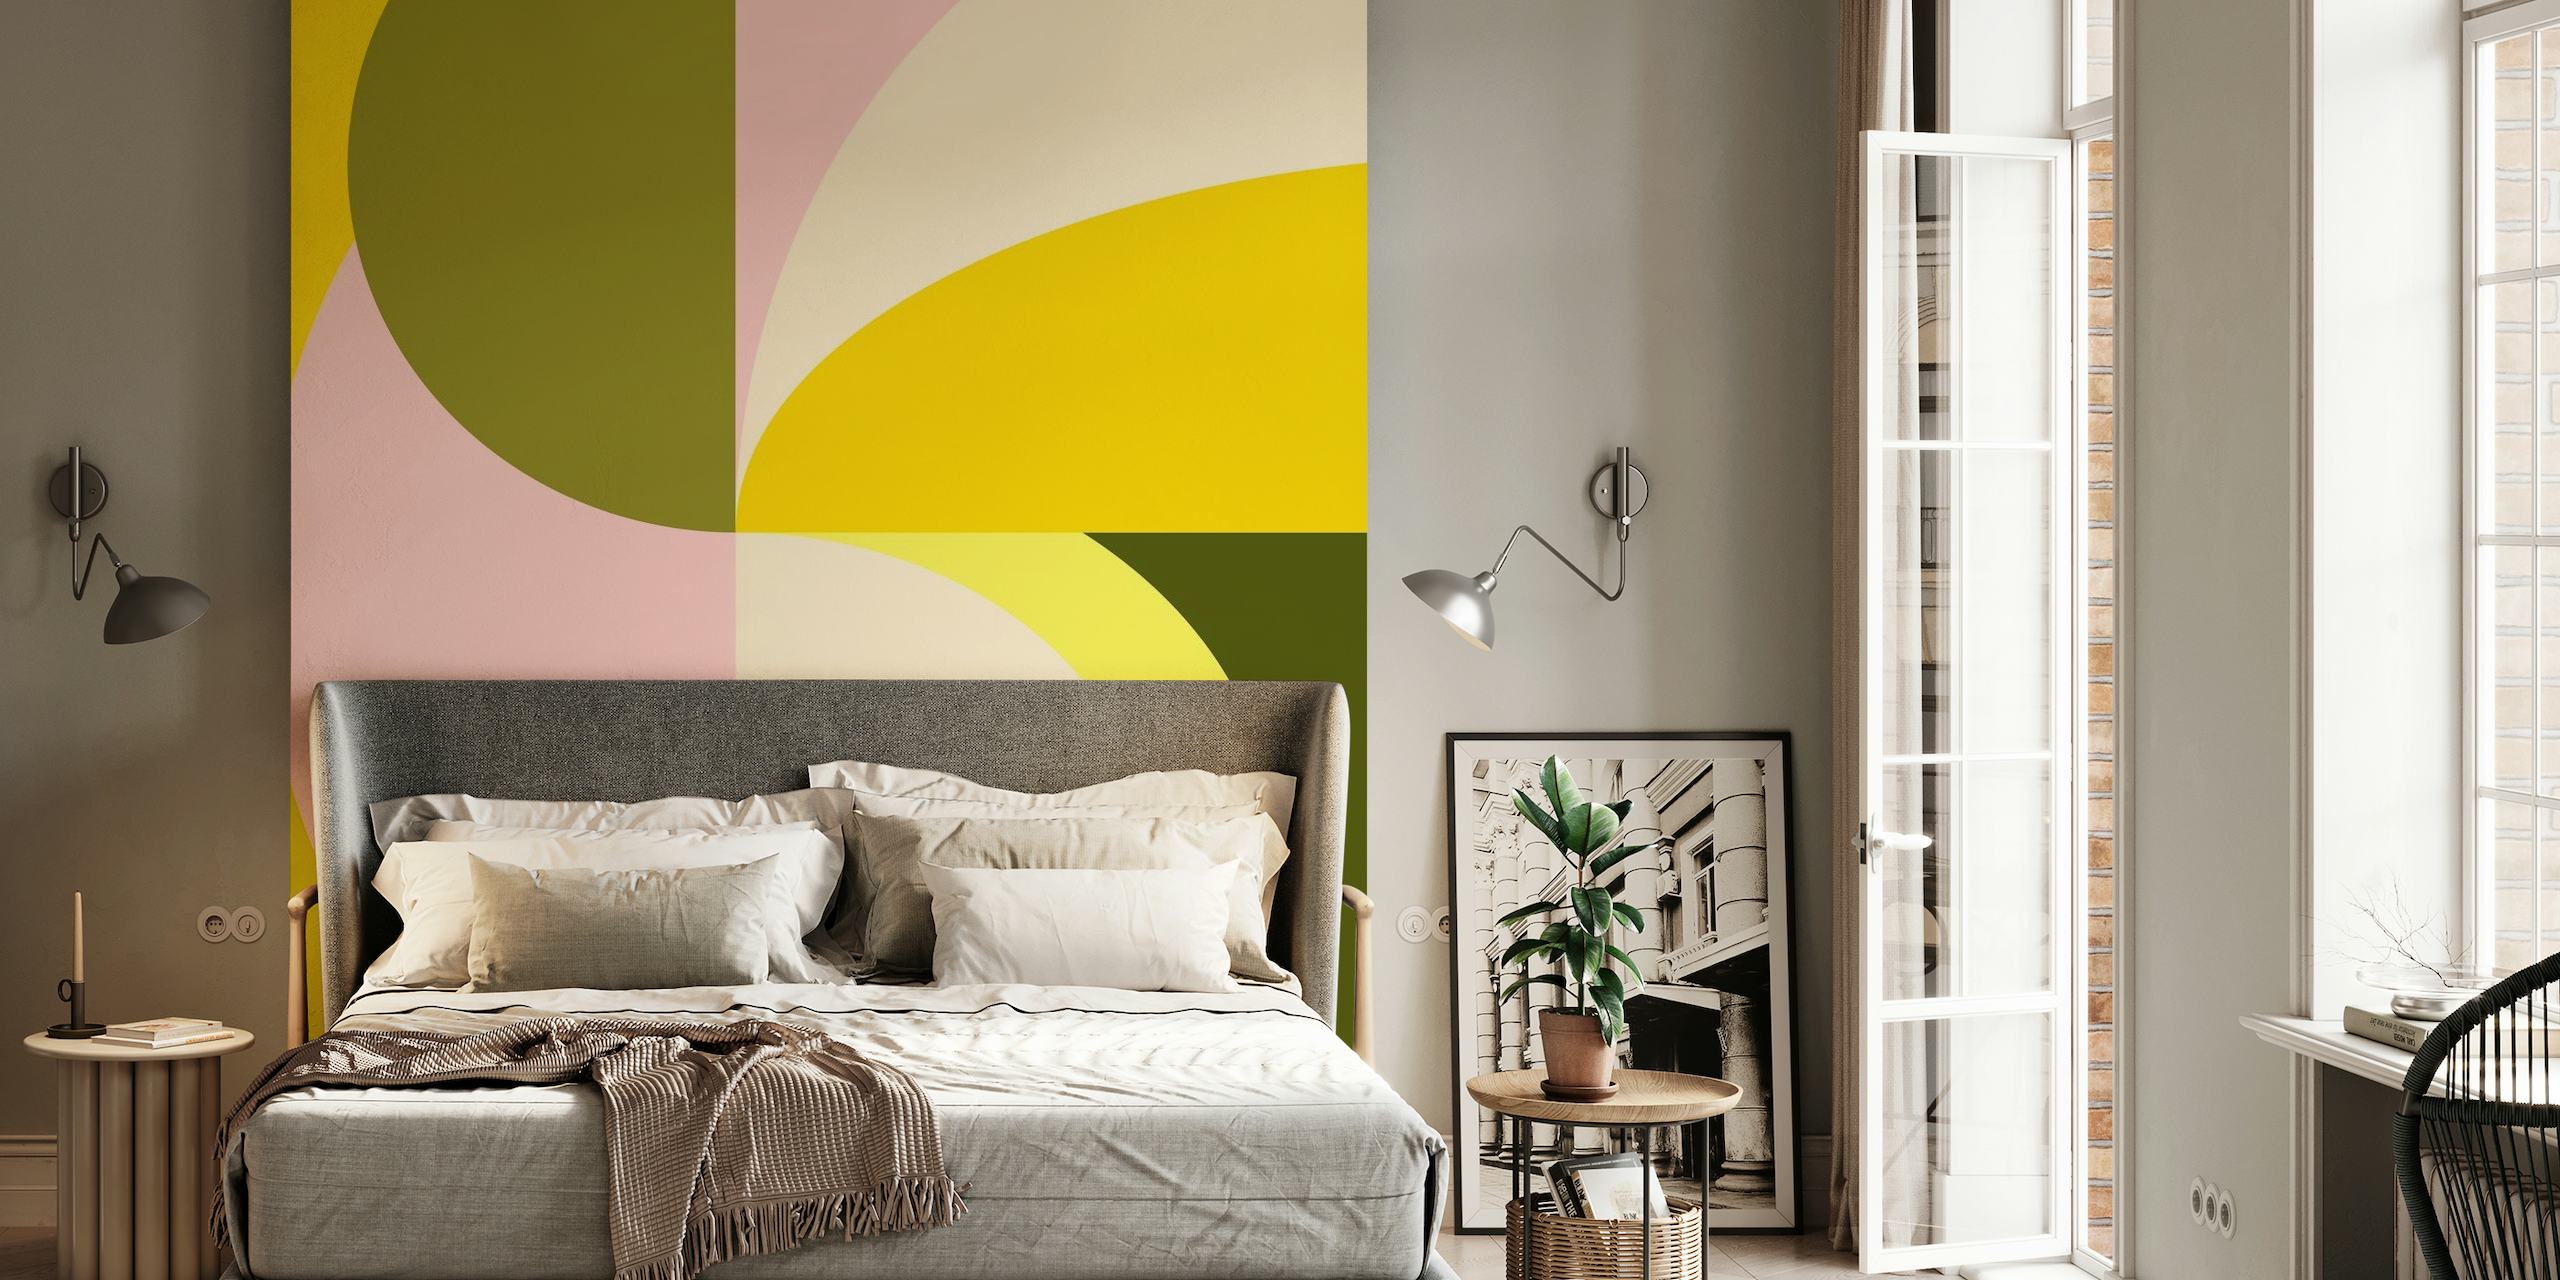 Zidni mural sa apstraktnim geometrijskim oblicima s citrusnim bojama uključujući žute, ružičaste i zelene tonove